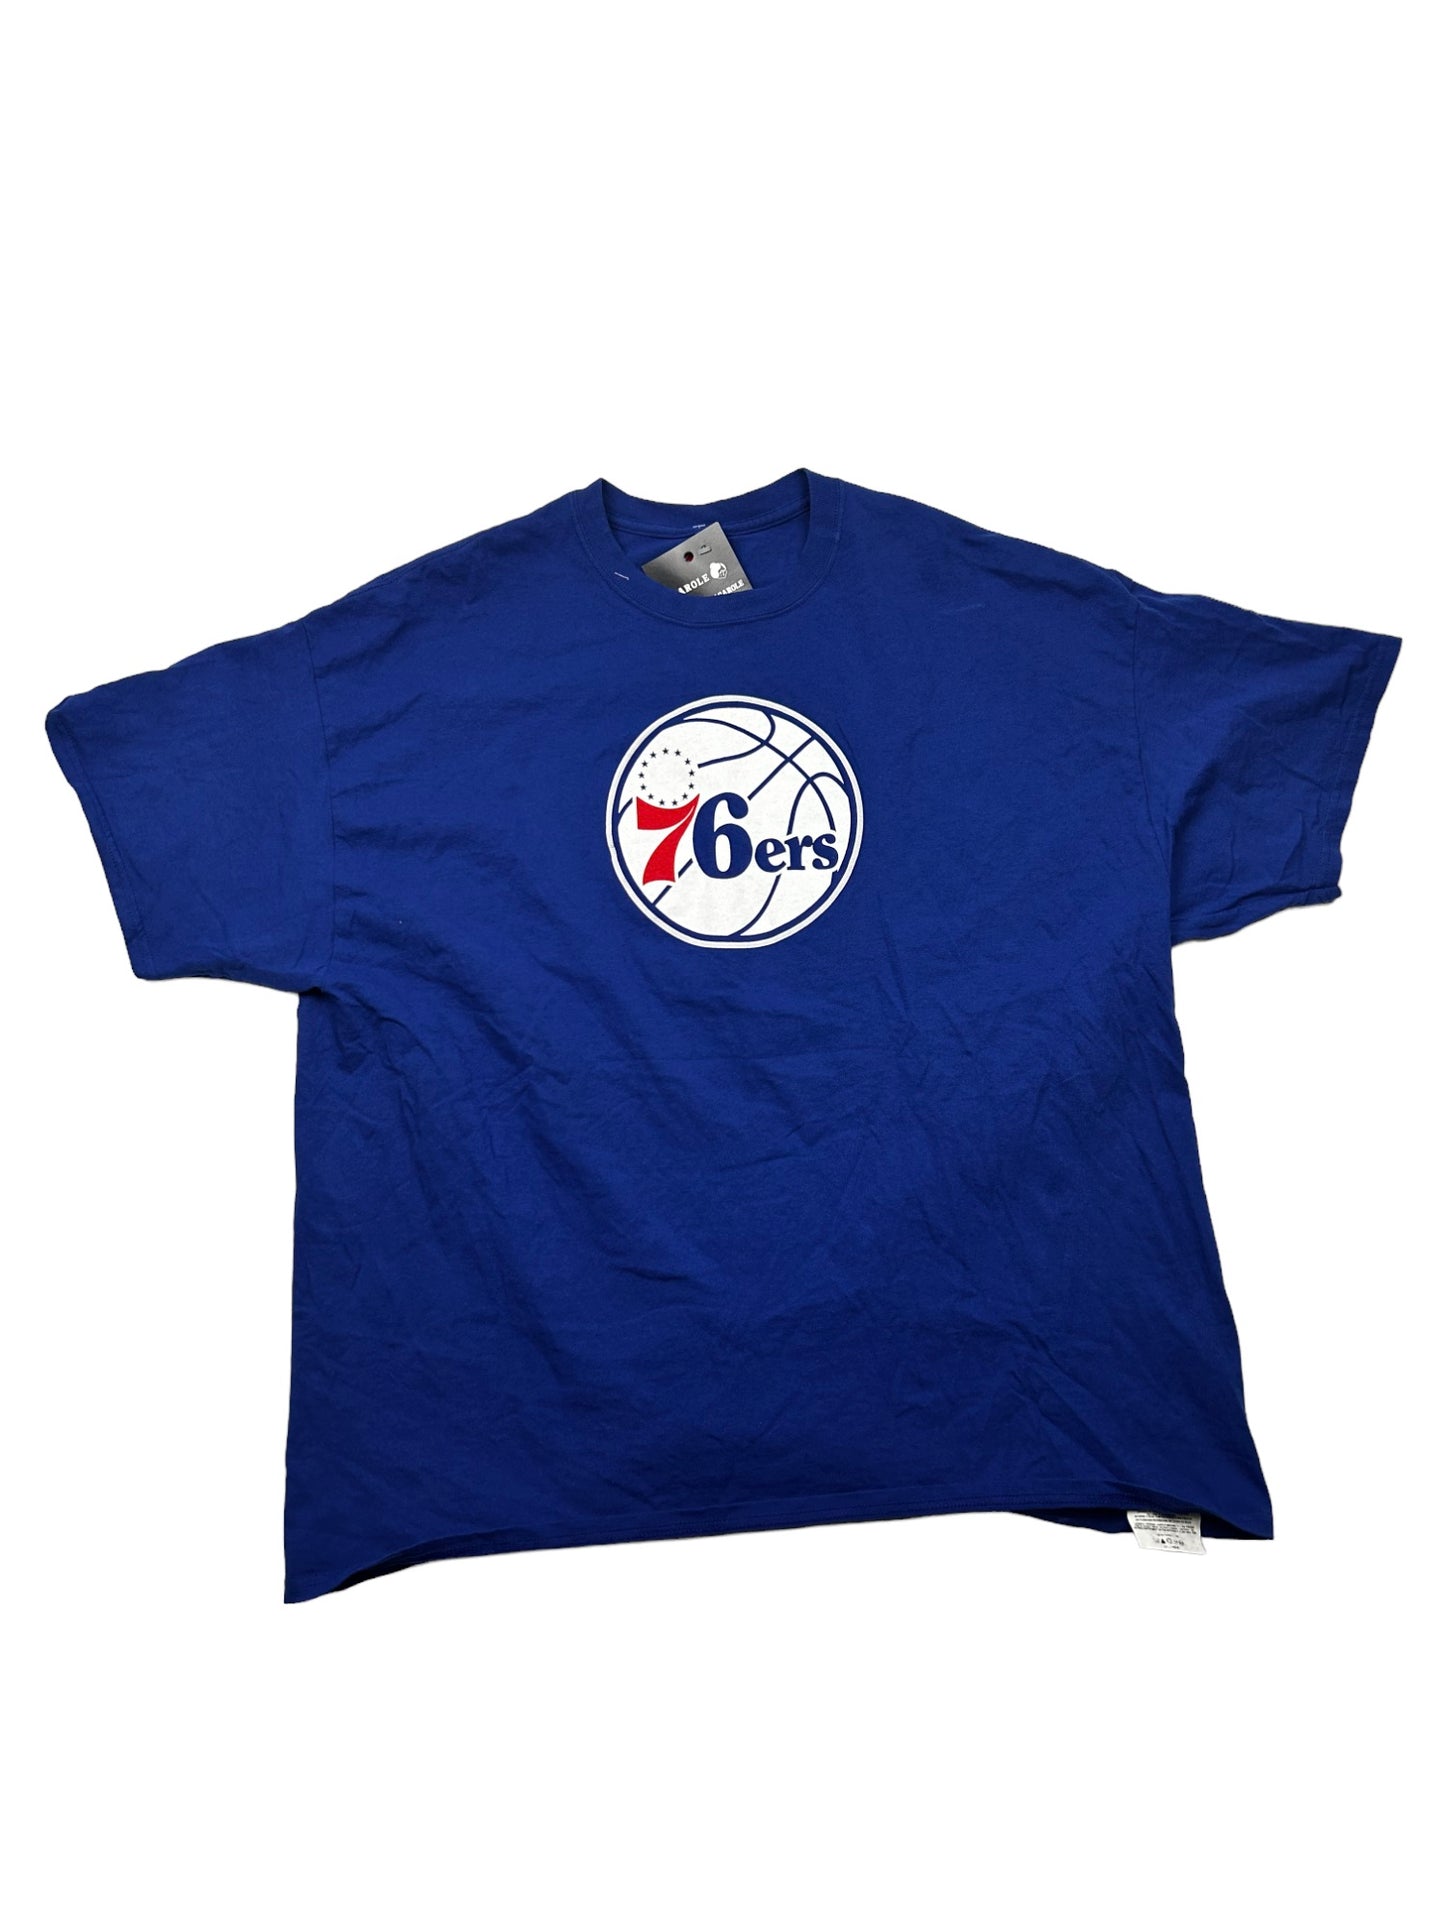 76ers T-Shirt